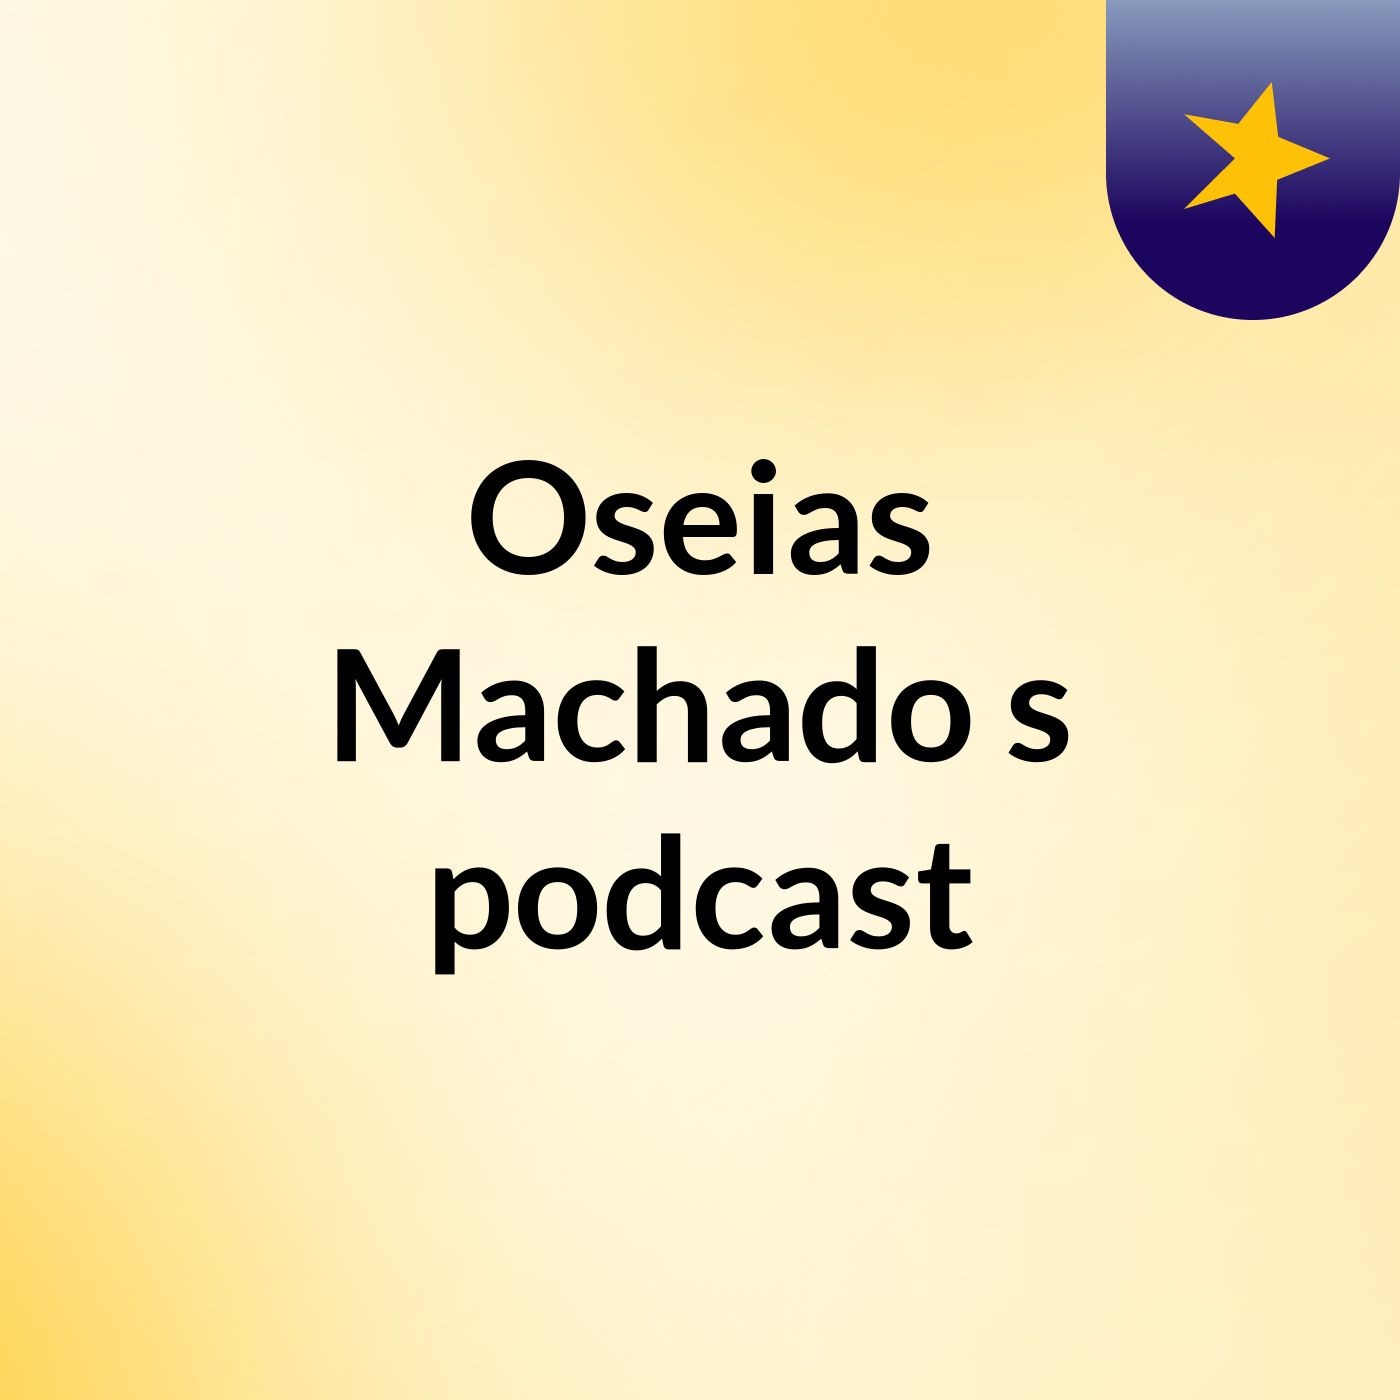 Oseias Machado's podcast